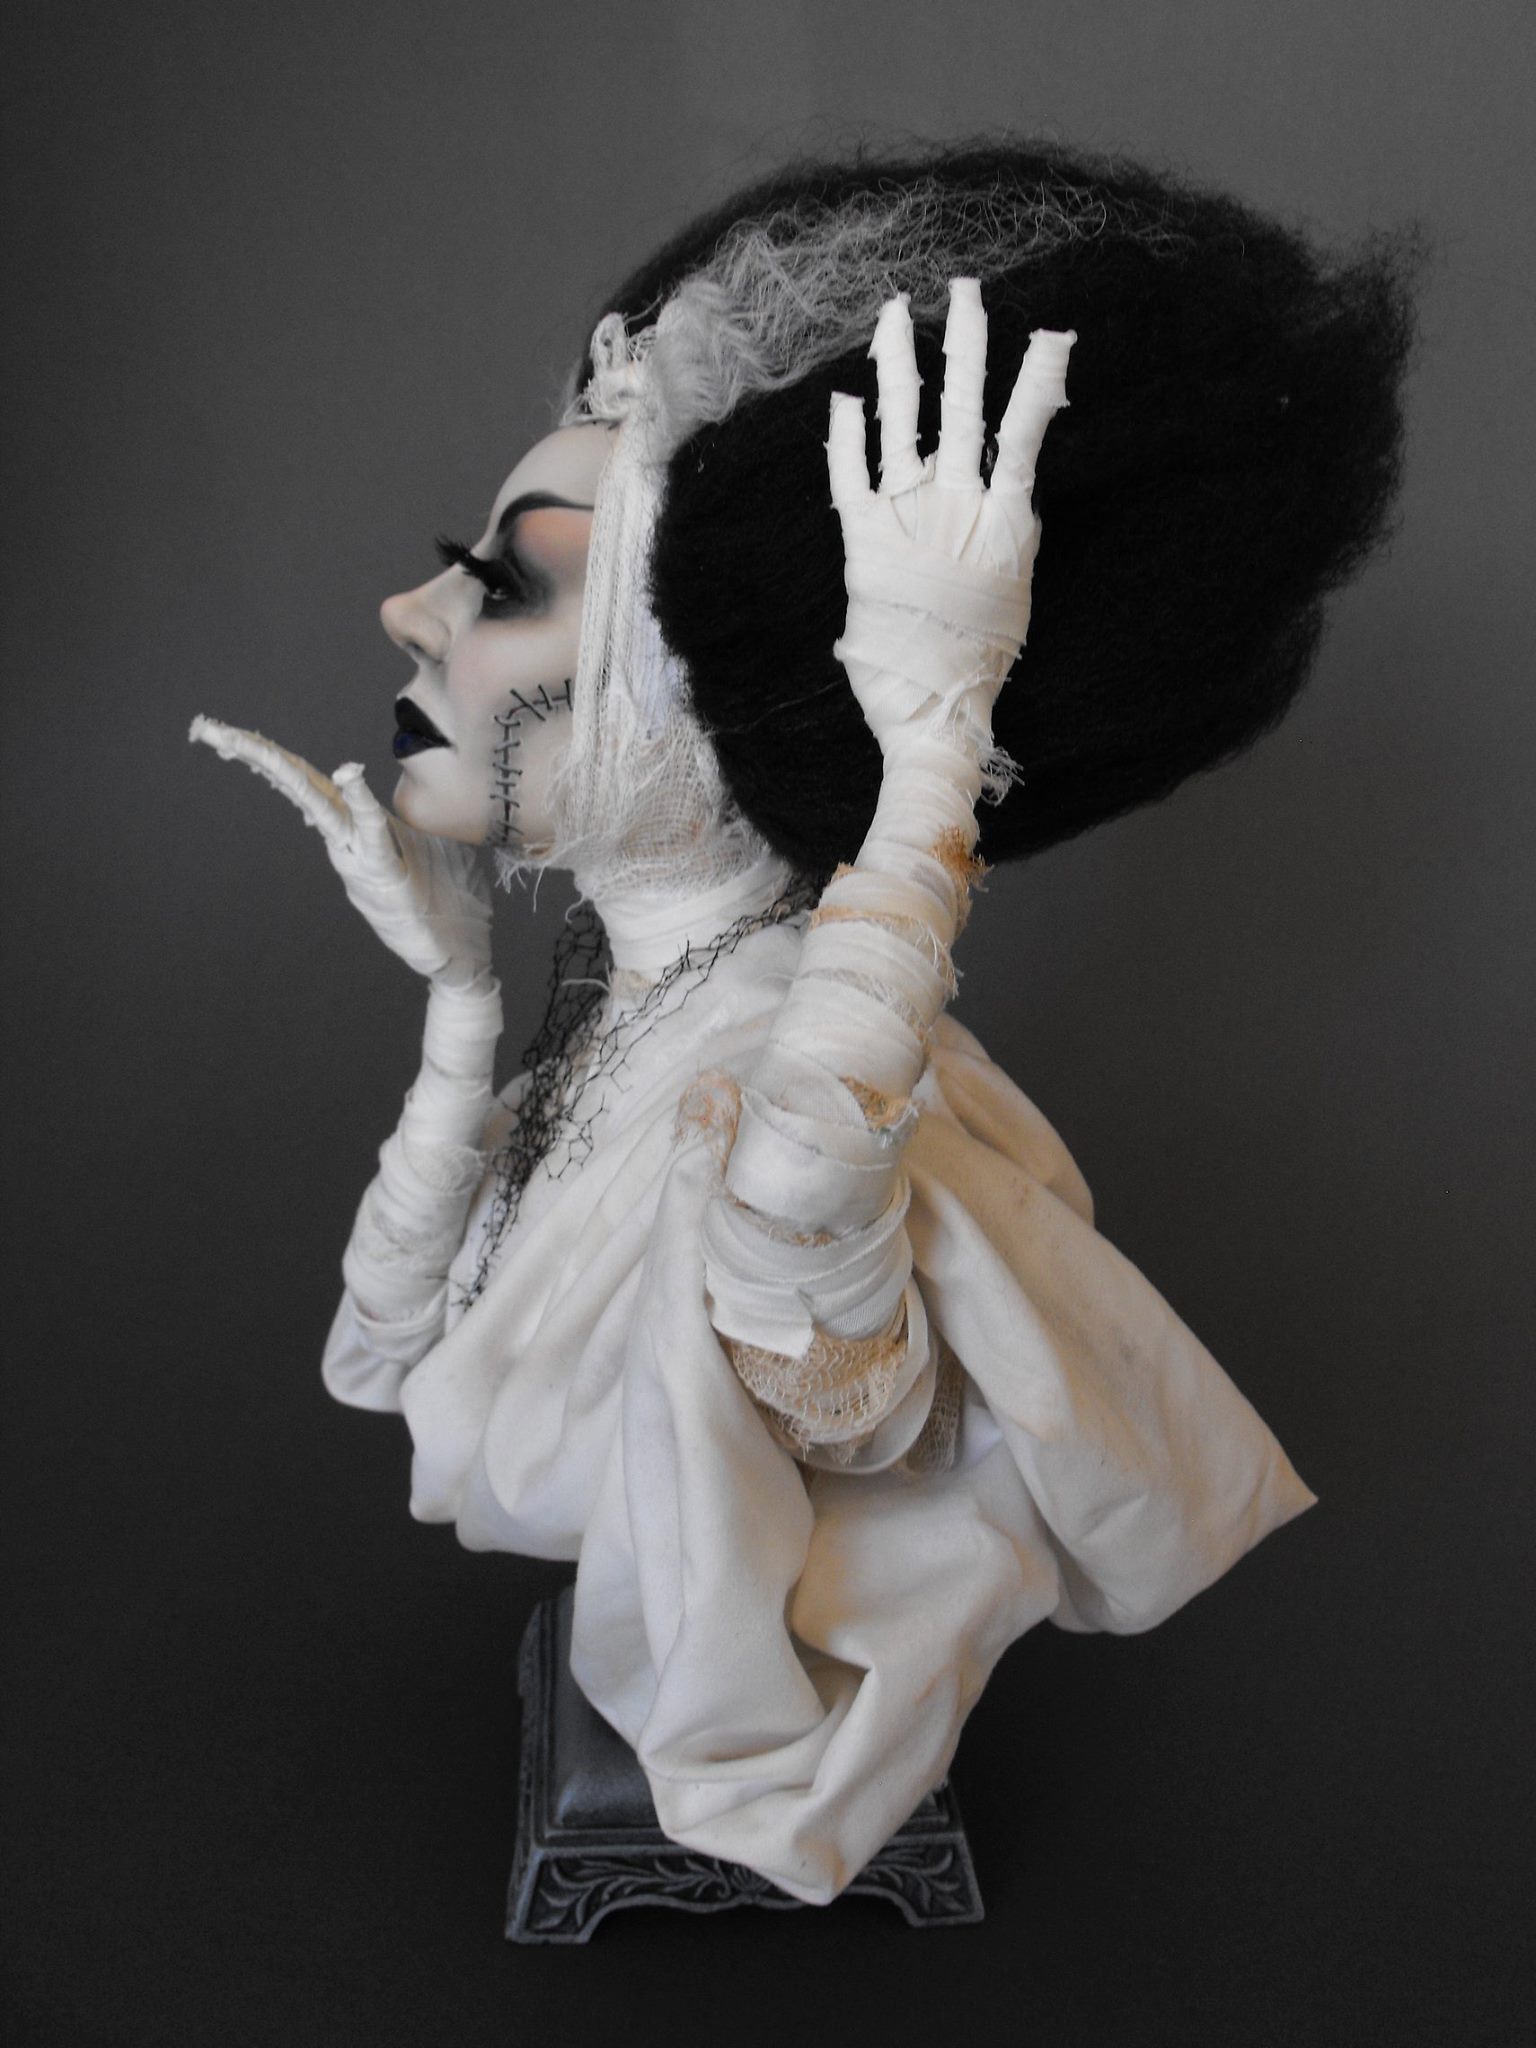 Dustin Poche – The Bride of Frankenstein sculpture